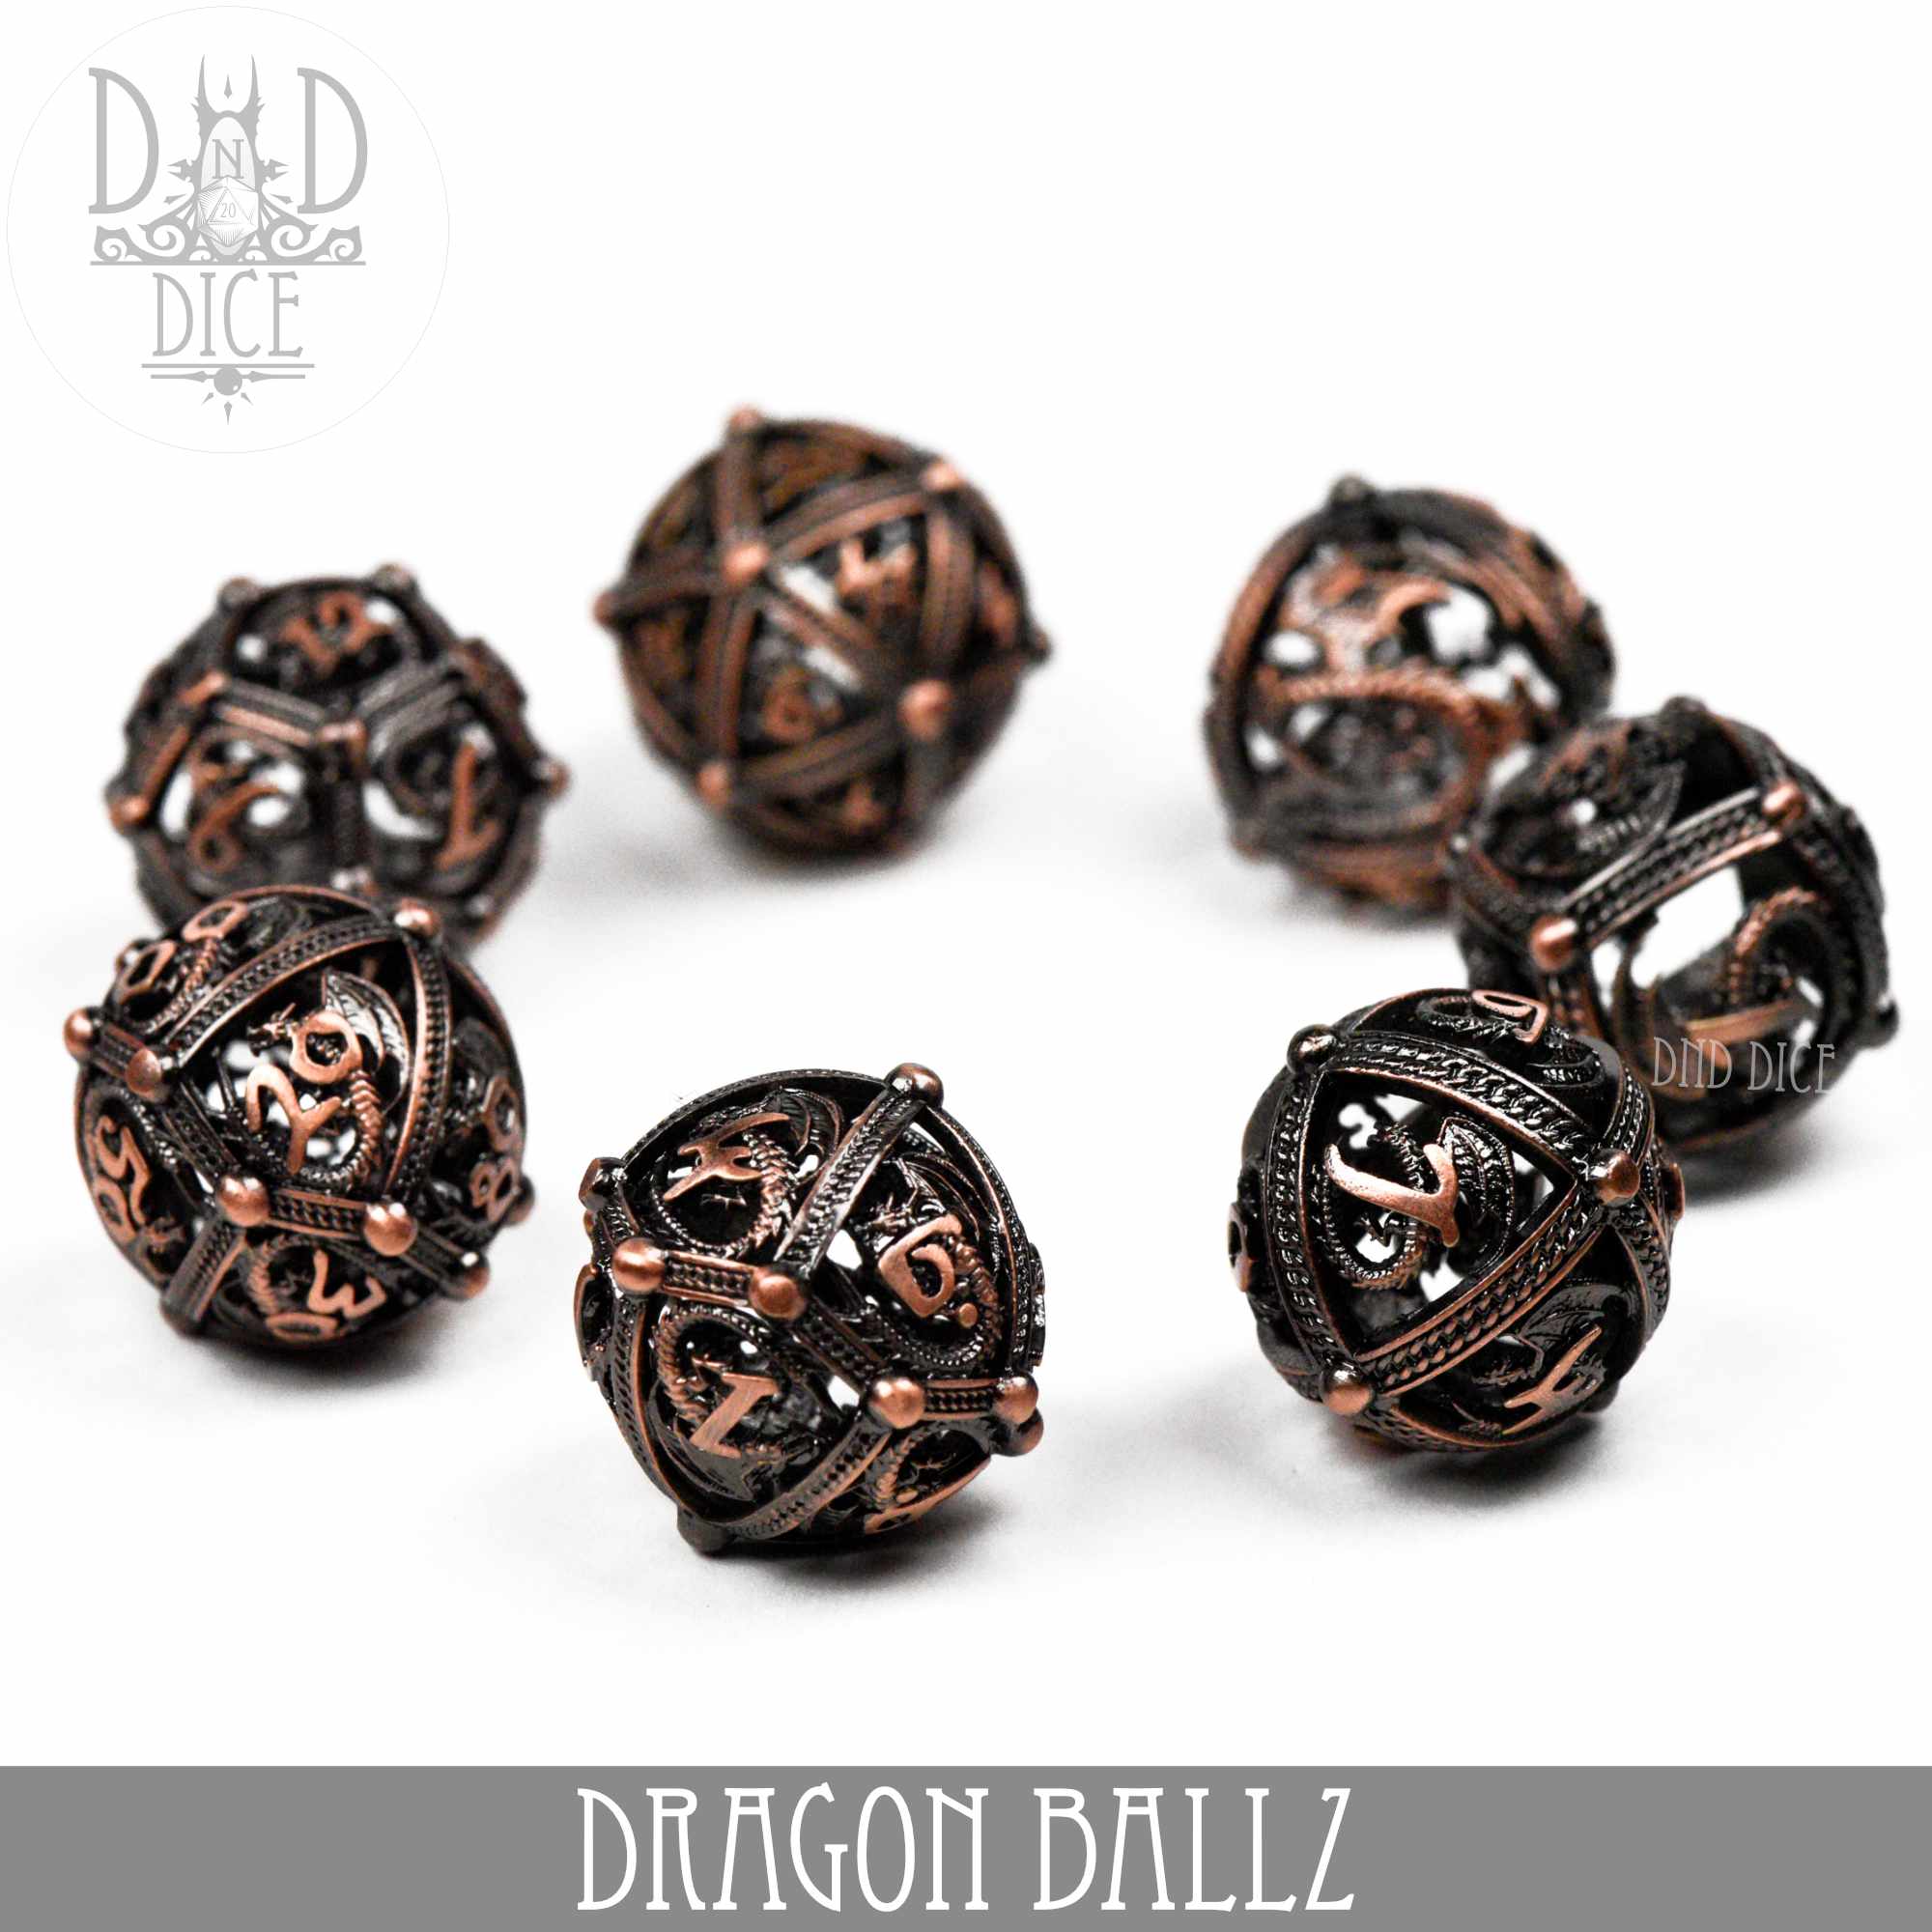 Dragon Ballz Metal Dice Set (Gift Box)